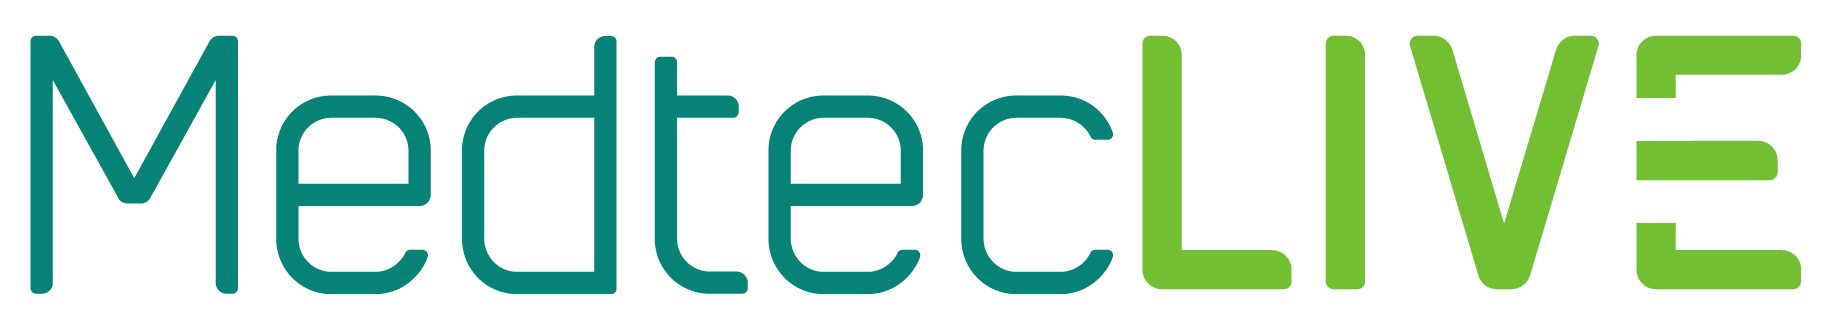 Medtec Live logo